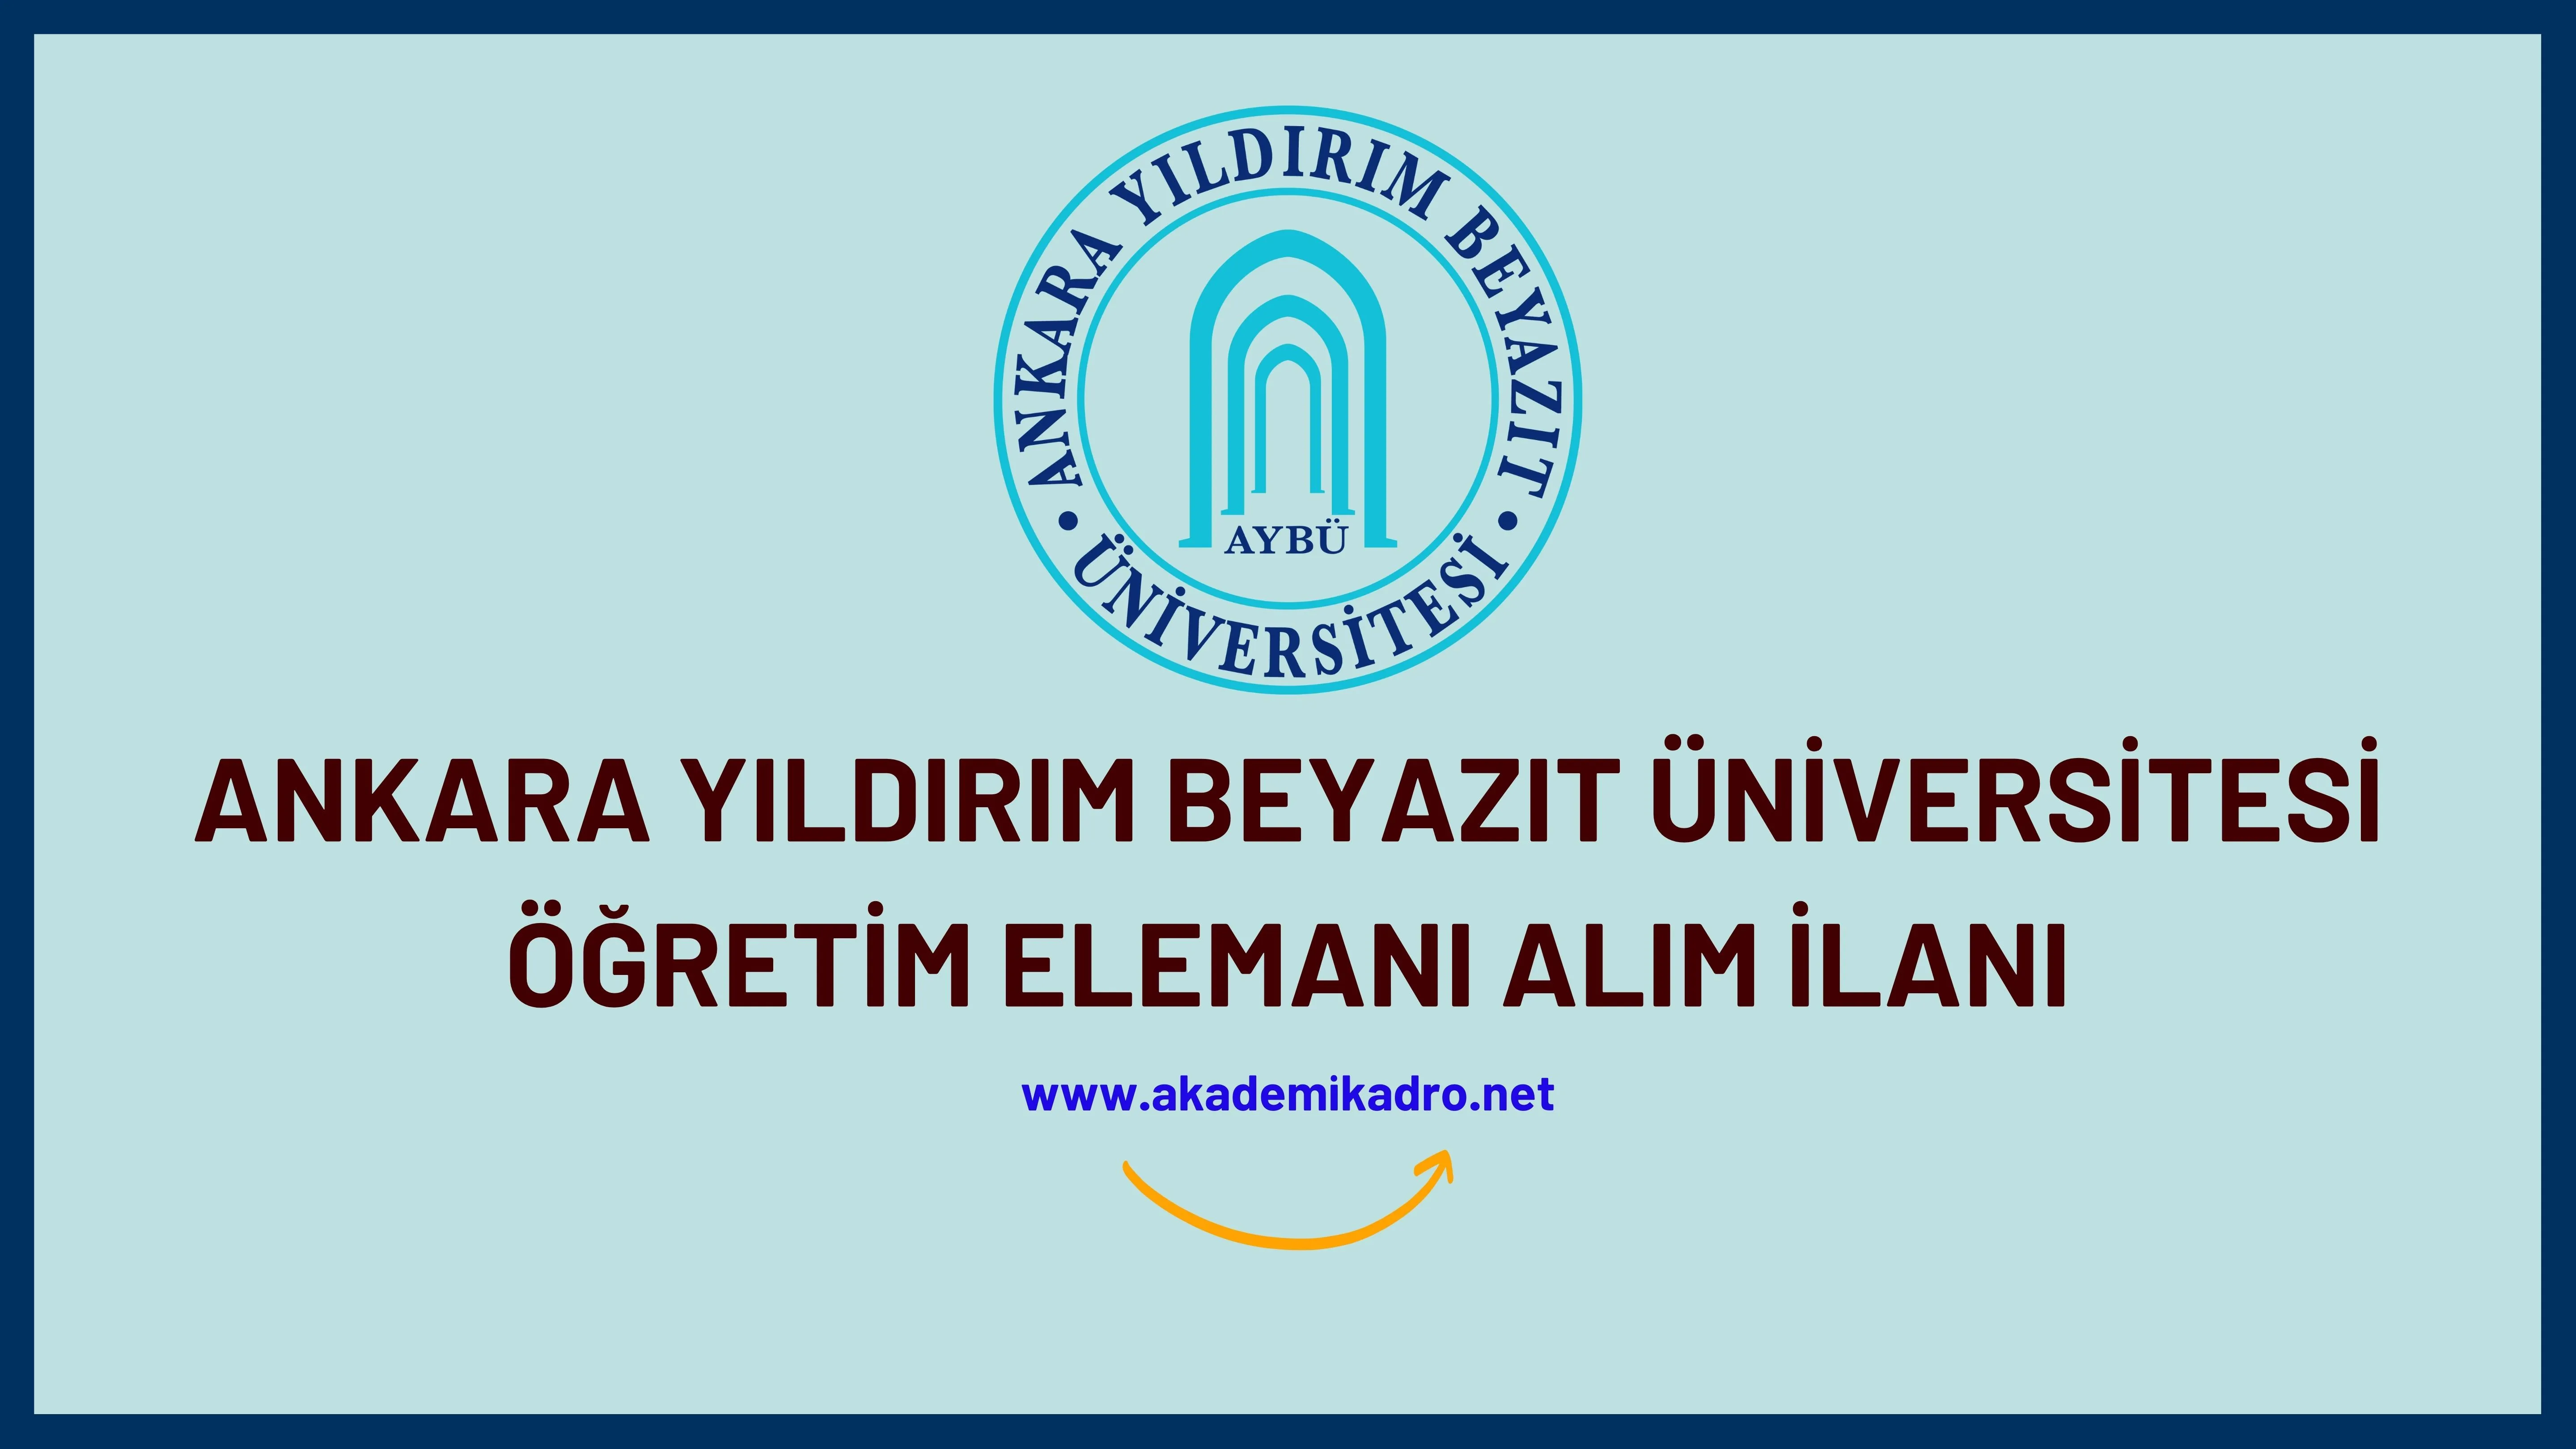 Ankara Yıldırım Beyazıt Üniversitesi 10 öğretim görevlisi, 31 Araştırma görevlisi ve 110 öğretim üyesi alacaktır.